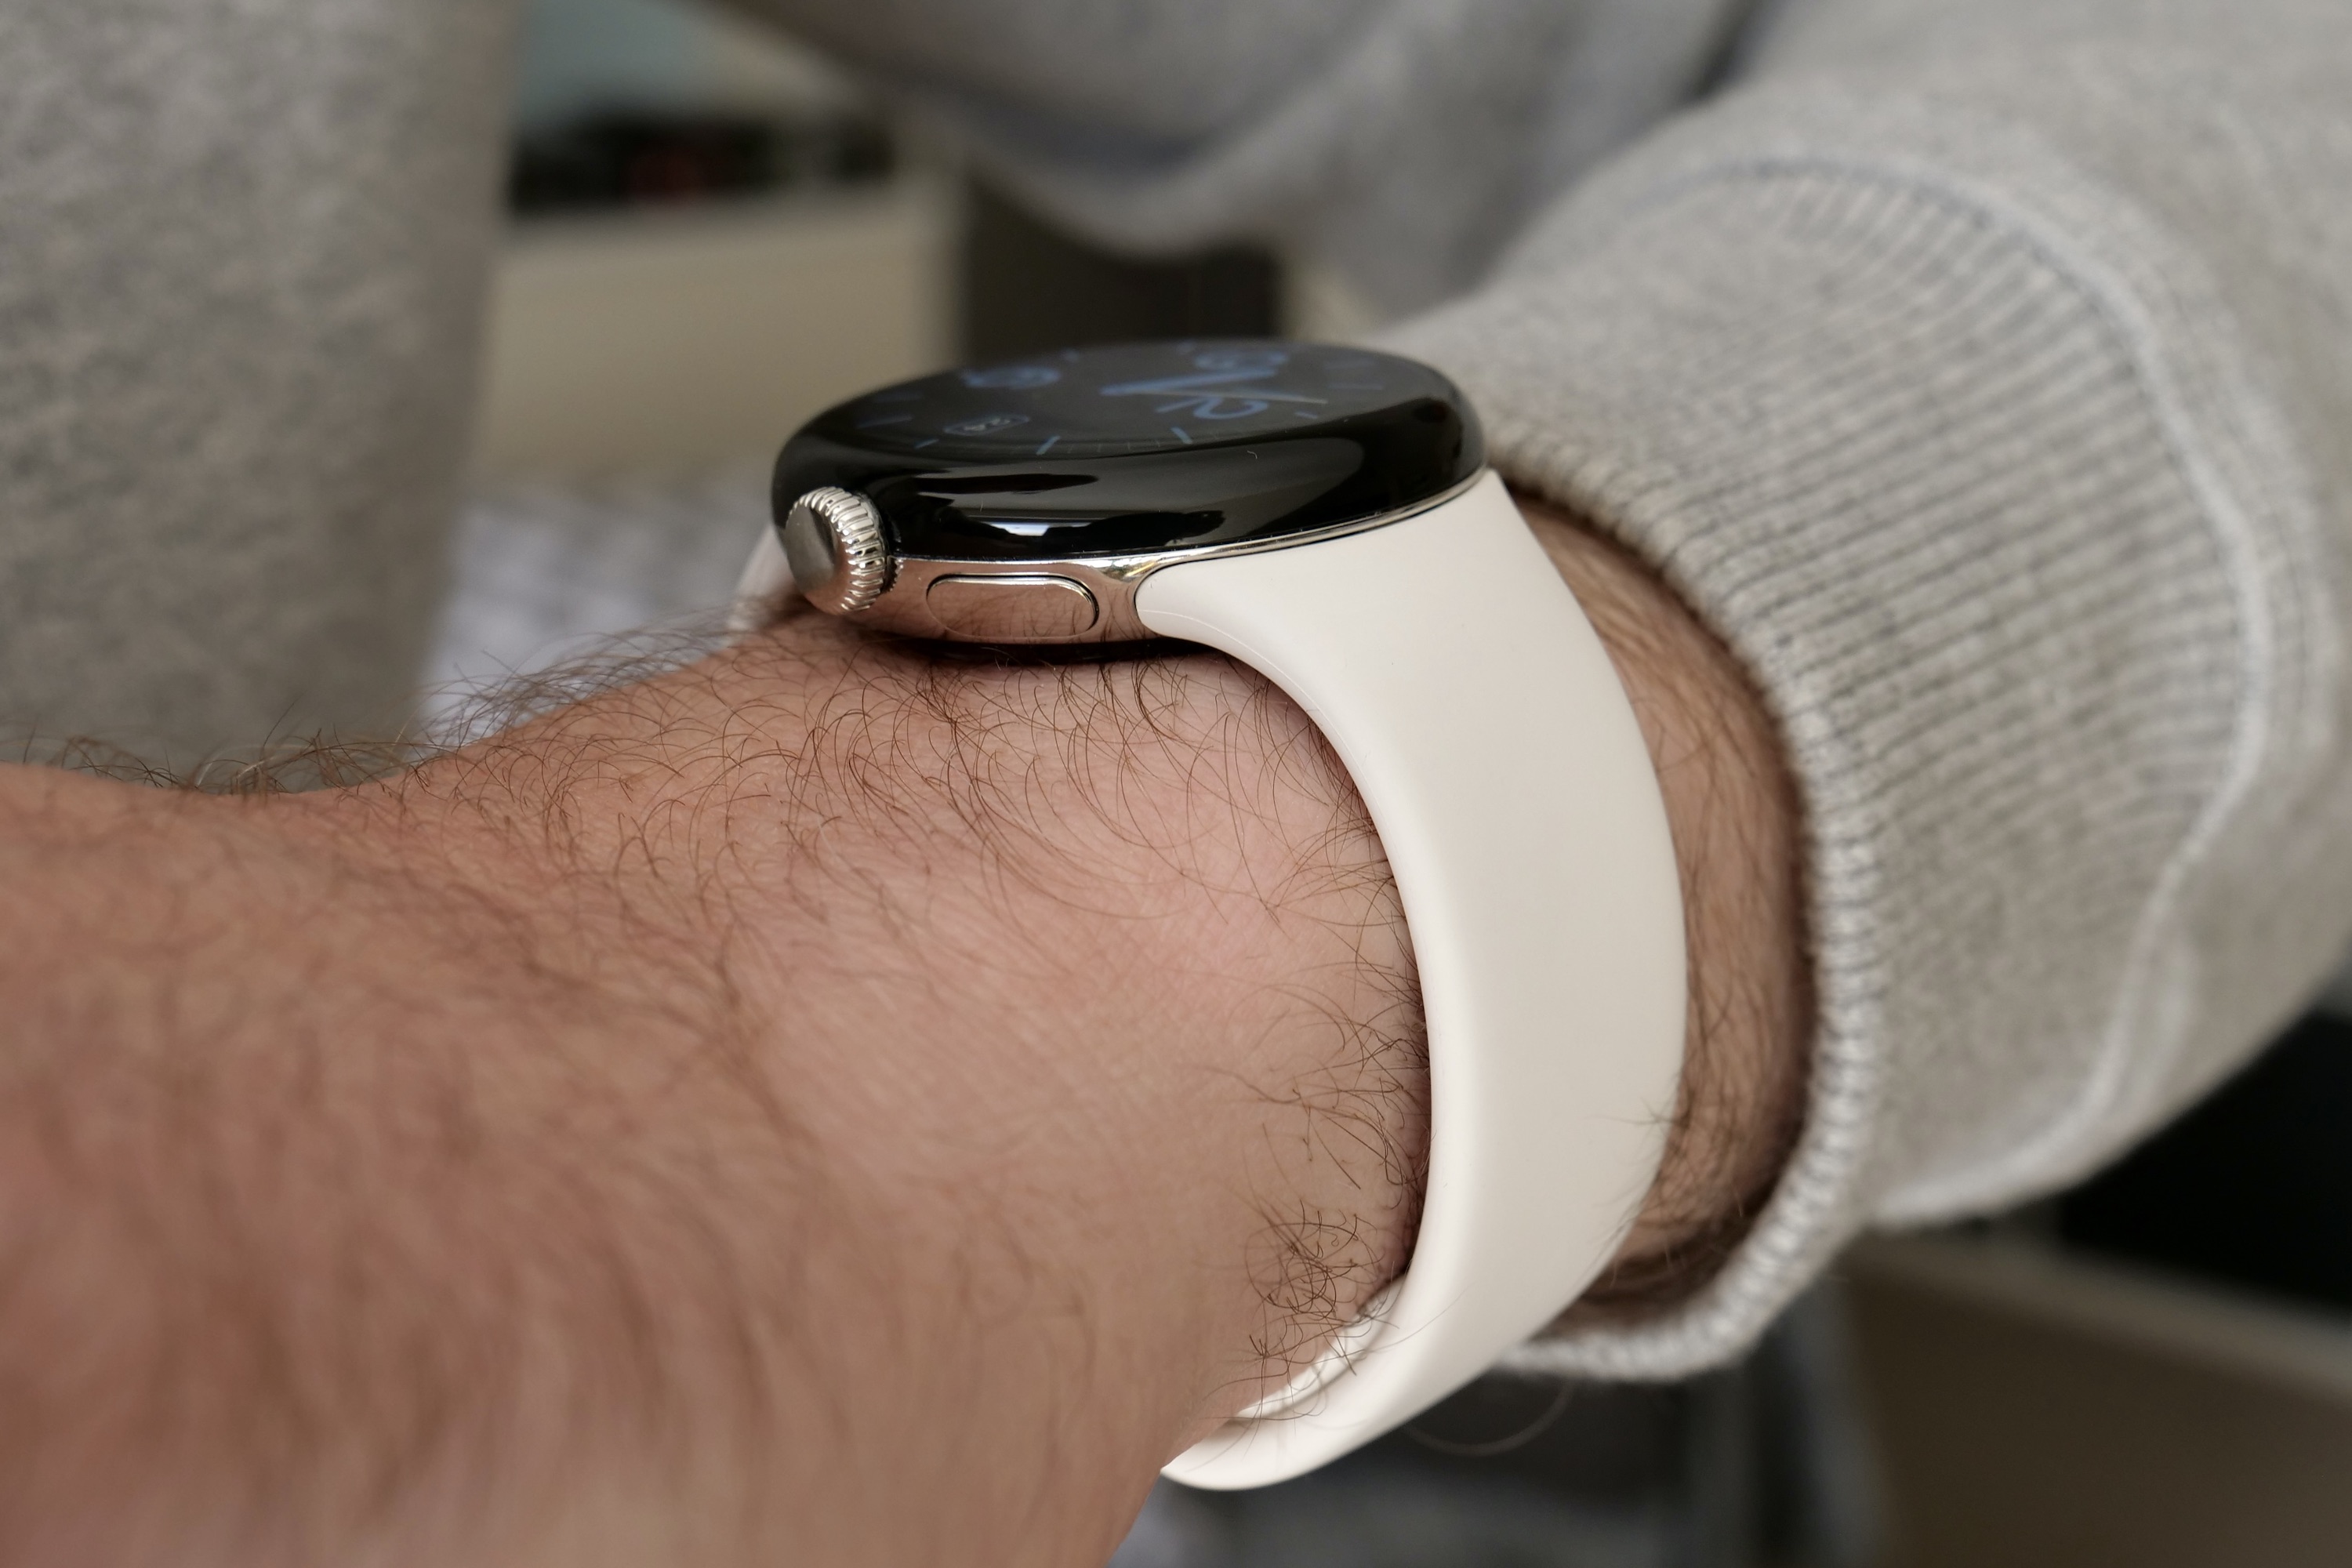 O Pixel Watch no pulso de uma pessoa, visto de lado.